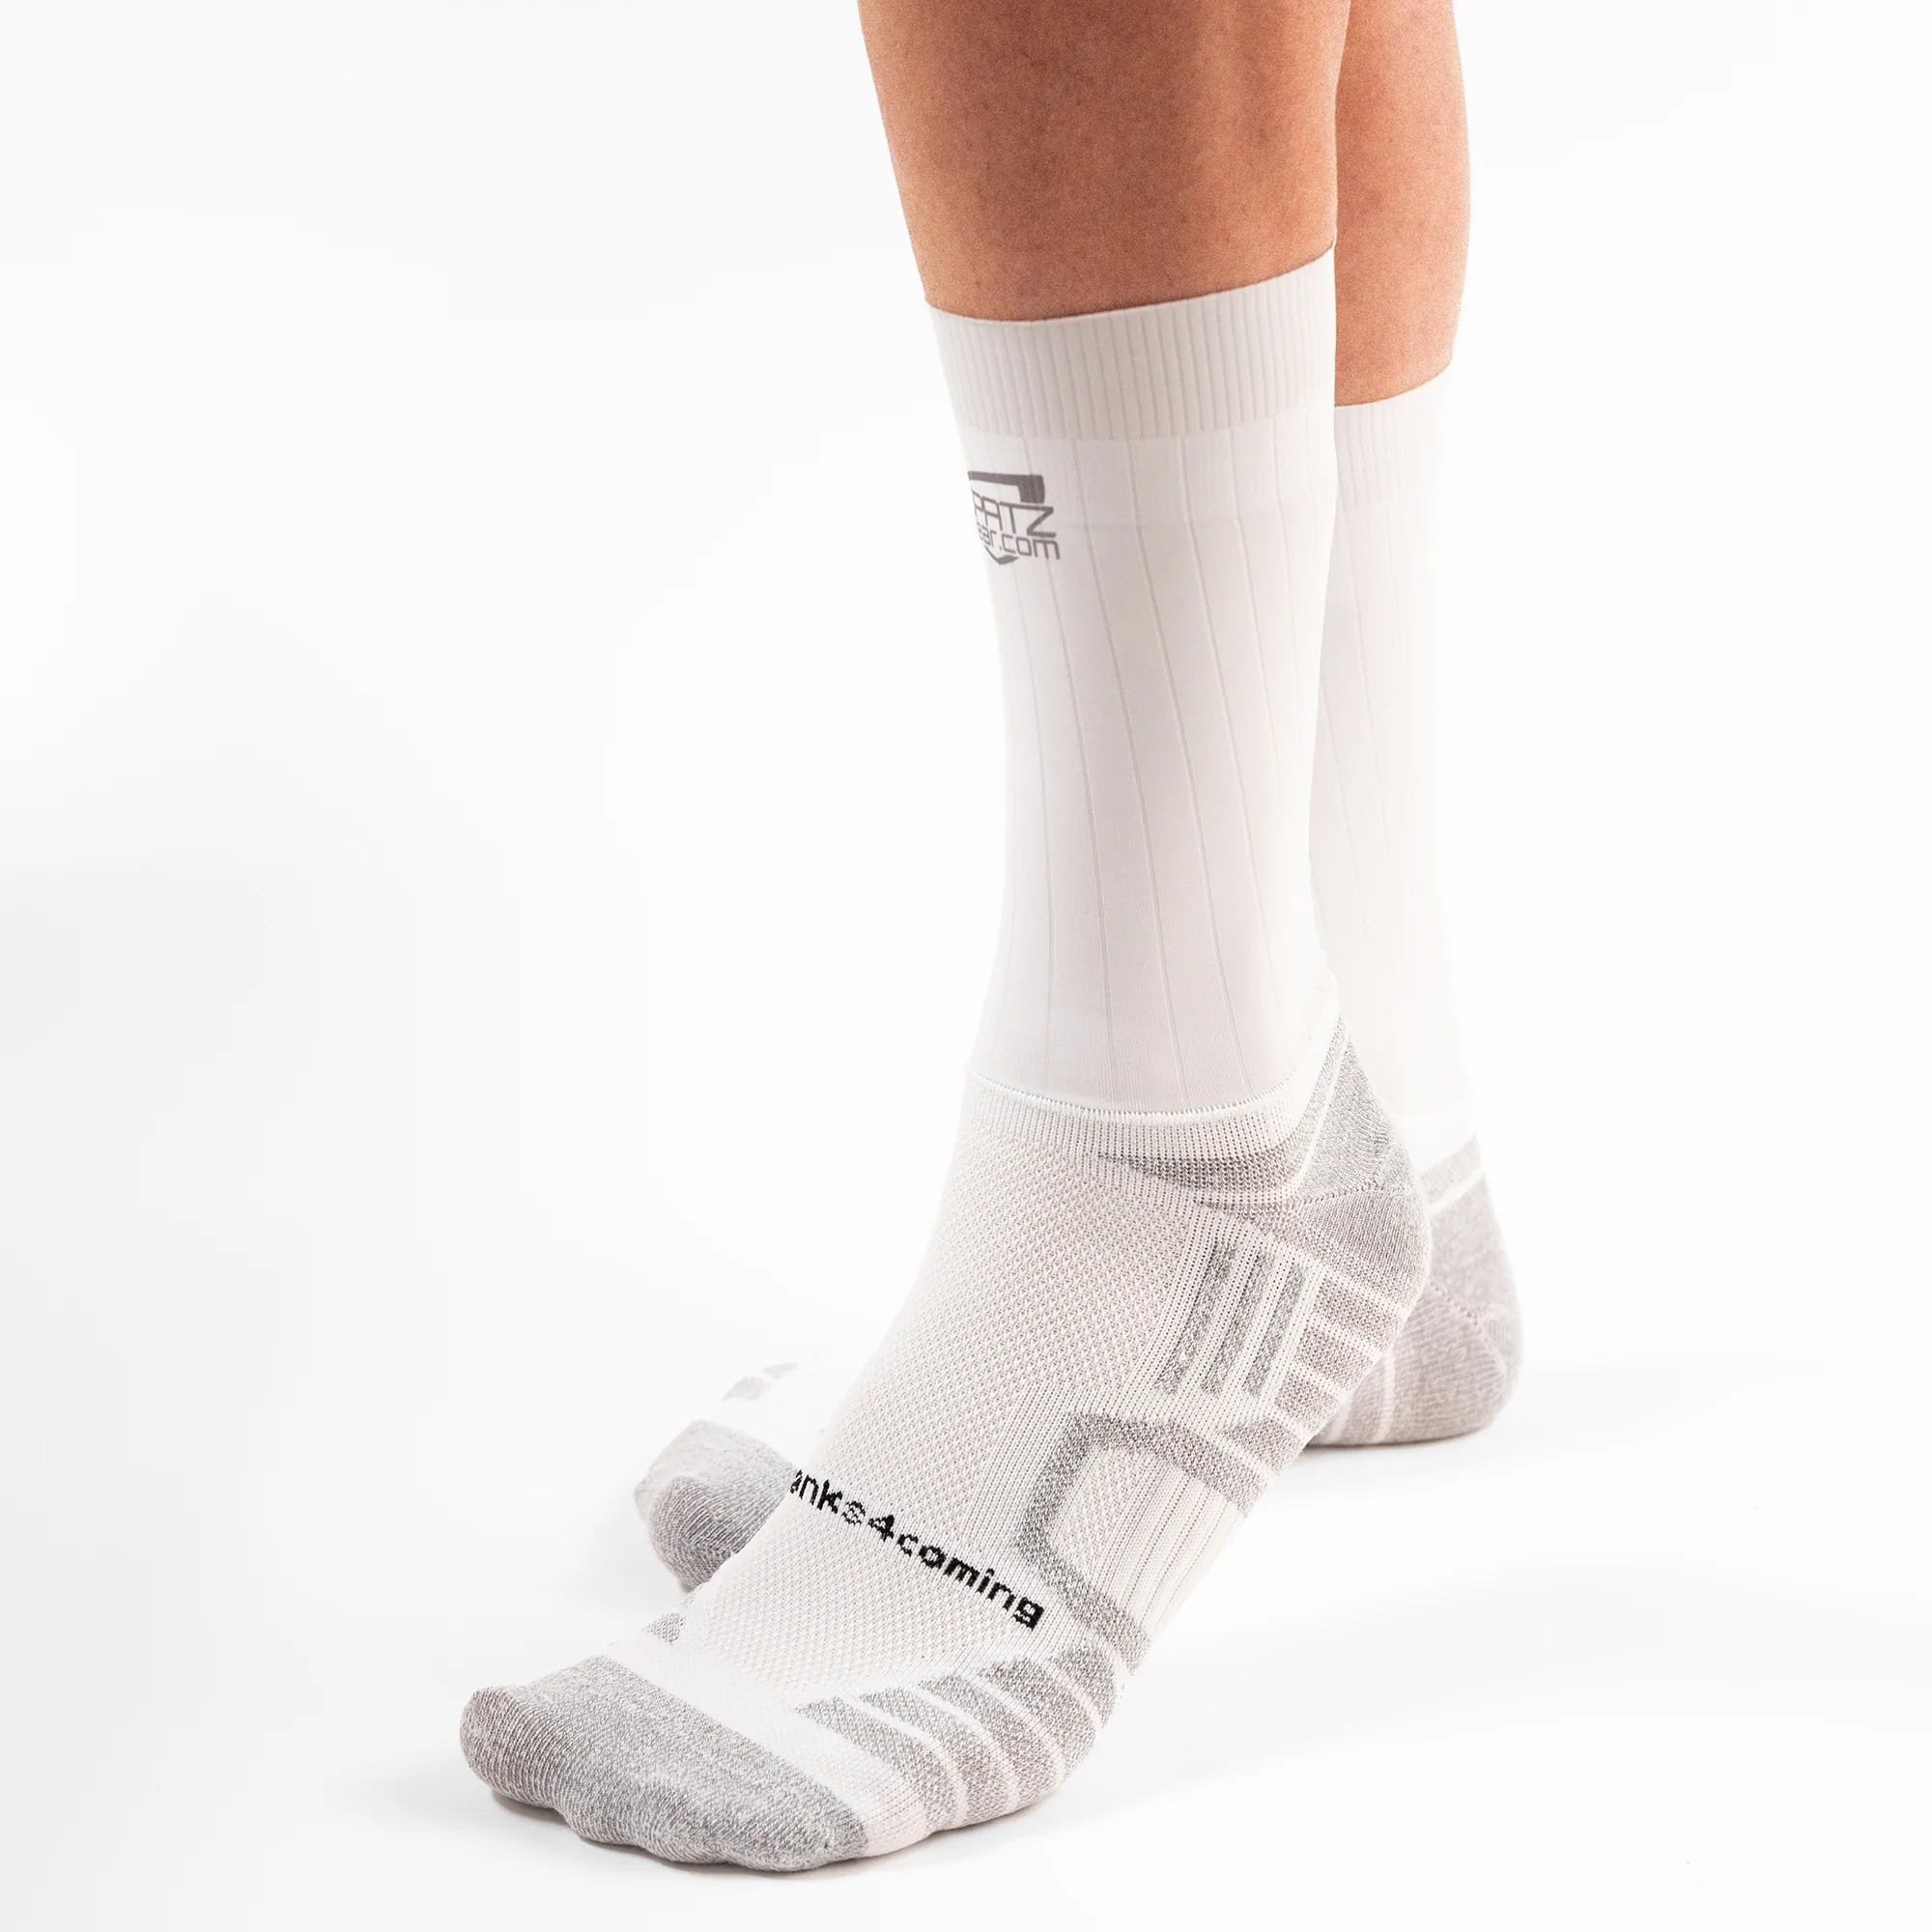 Spatz 'Aero Sokz' UCI Legal Aero Socks